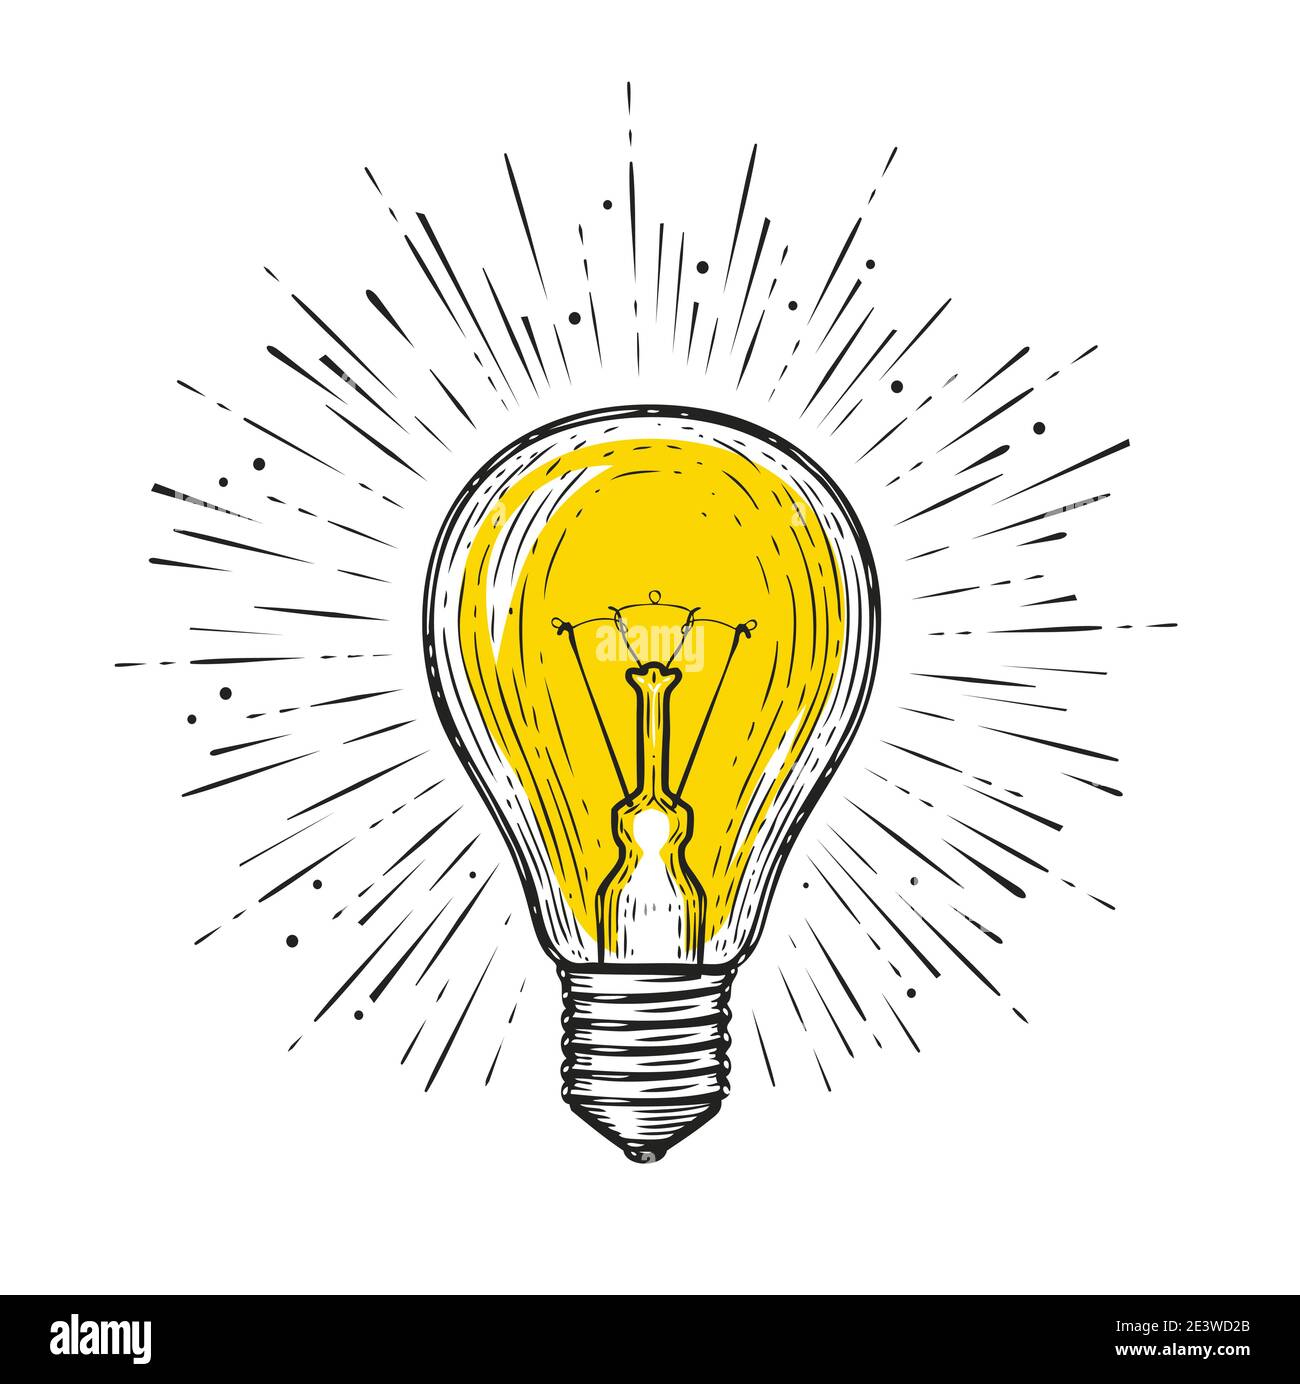 Allumage de l'ampoule. Esquisse dessin d'illustration vectorielle. Symbole  de la lampe électrique Image Vectorielle Stock - Alamy